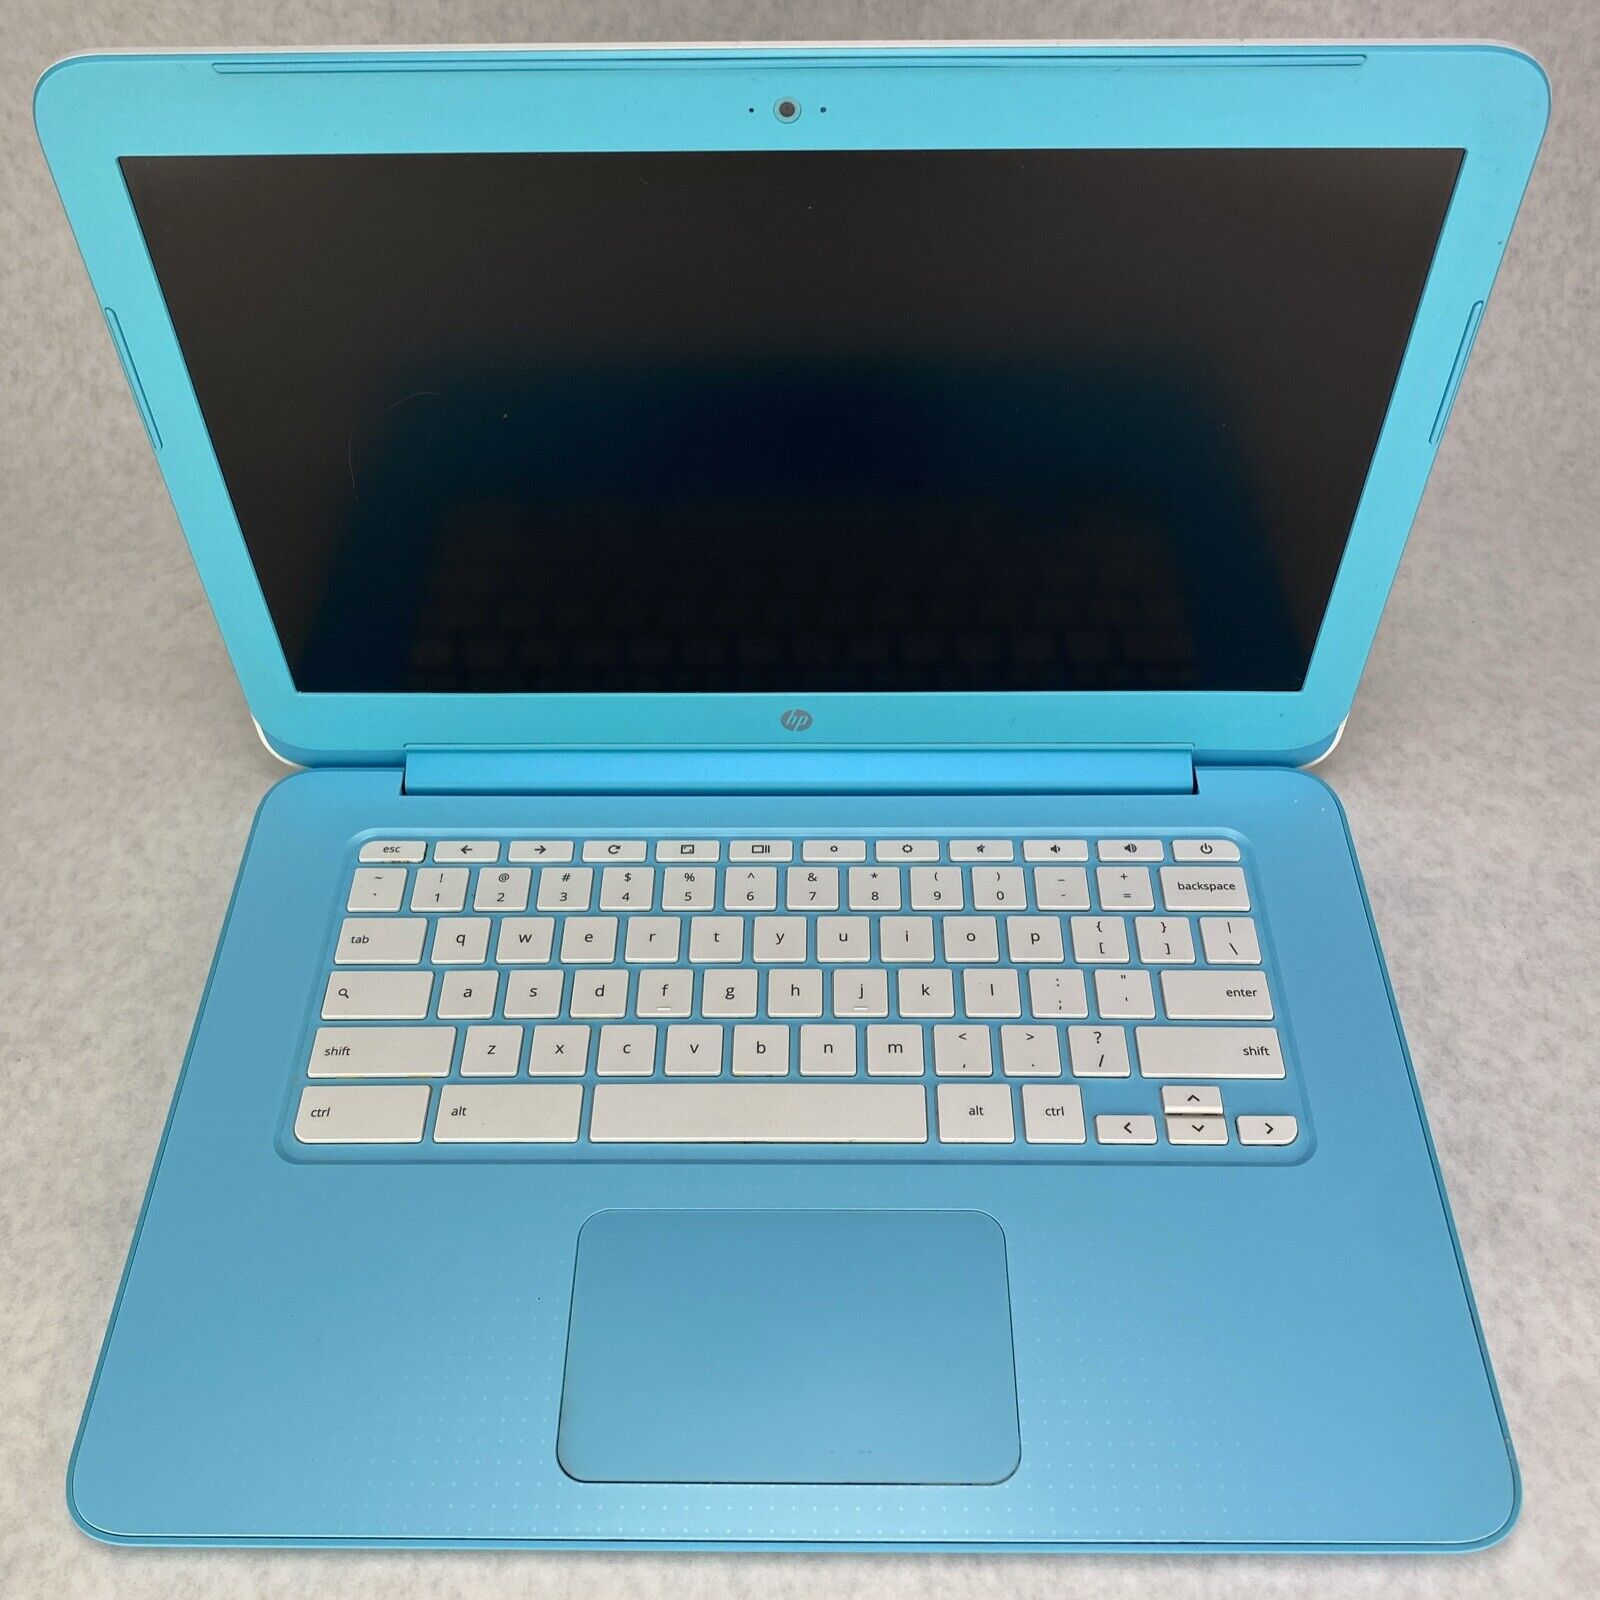 HP ChromeBook 14-ak060nr Intel Celeron 2940 1.83GHz 4GB RAM 16GB No AC Adapter